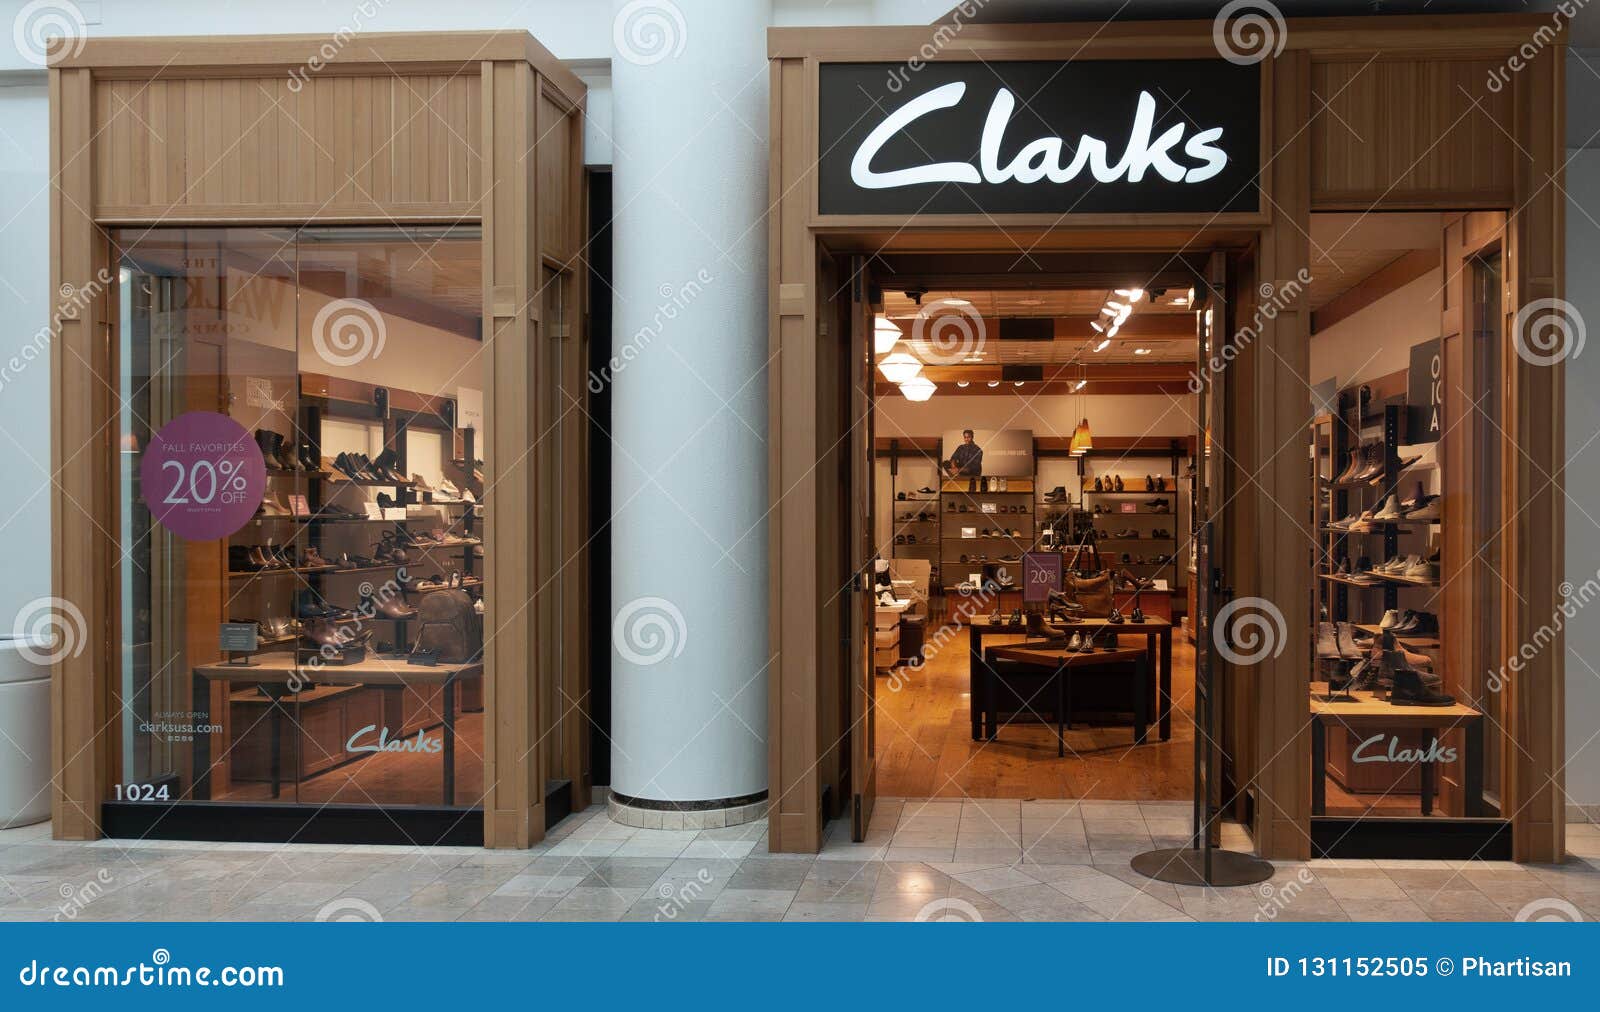 clark shoe store